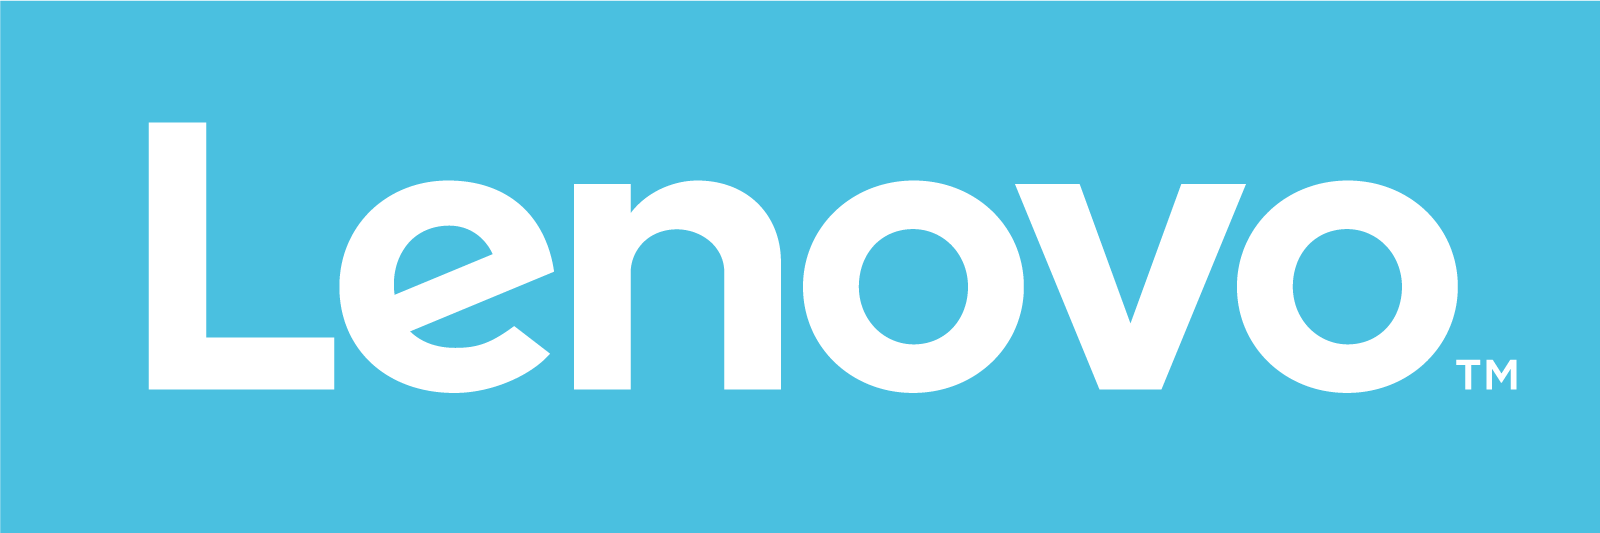 Light Blue Logo - Lenovo's new logo aims for “fashion brand” feel